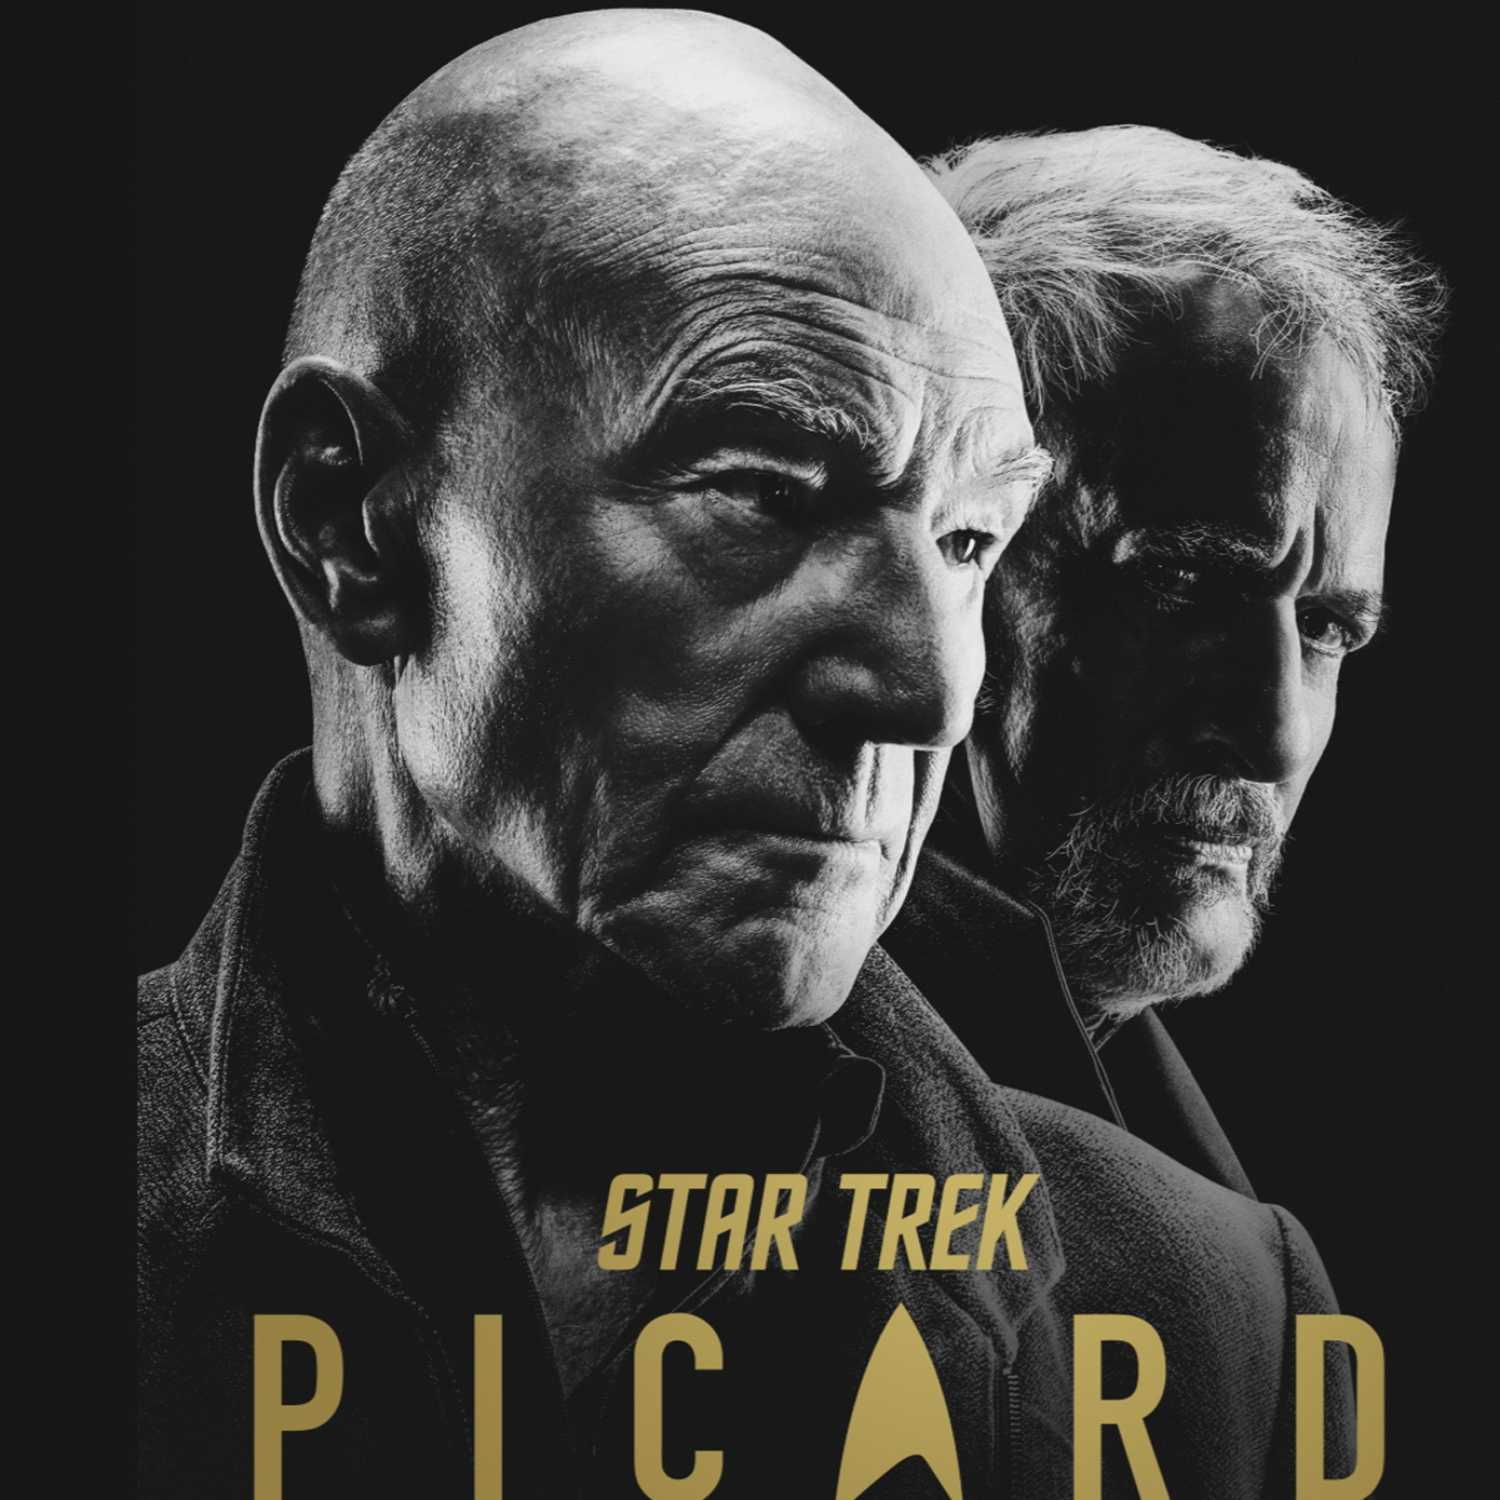 Bonus Episode: Star Trek Picard S2E2